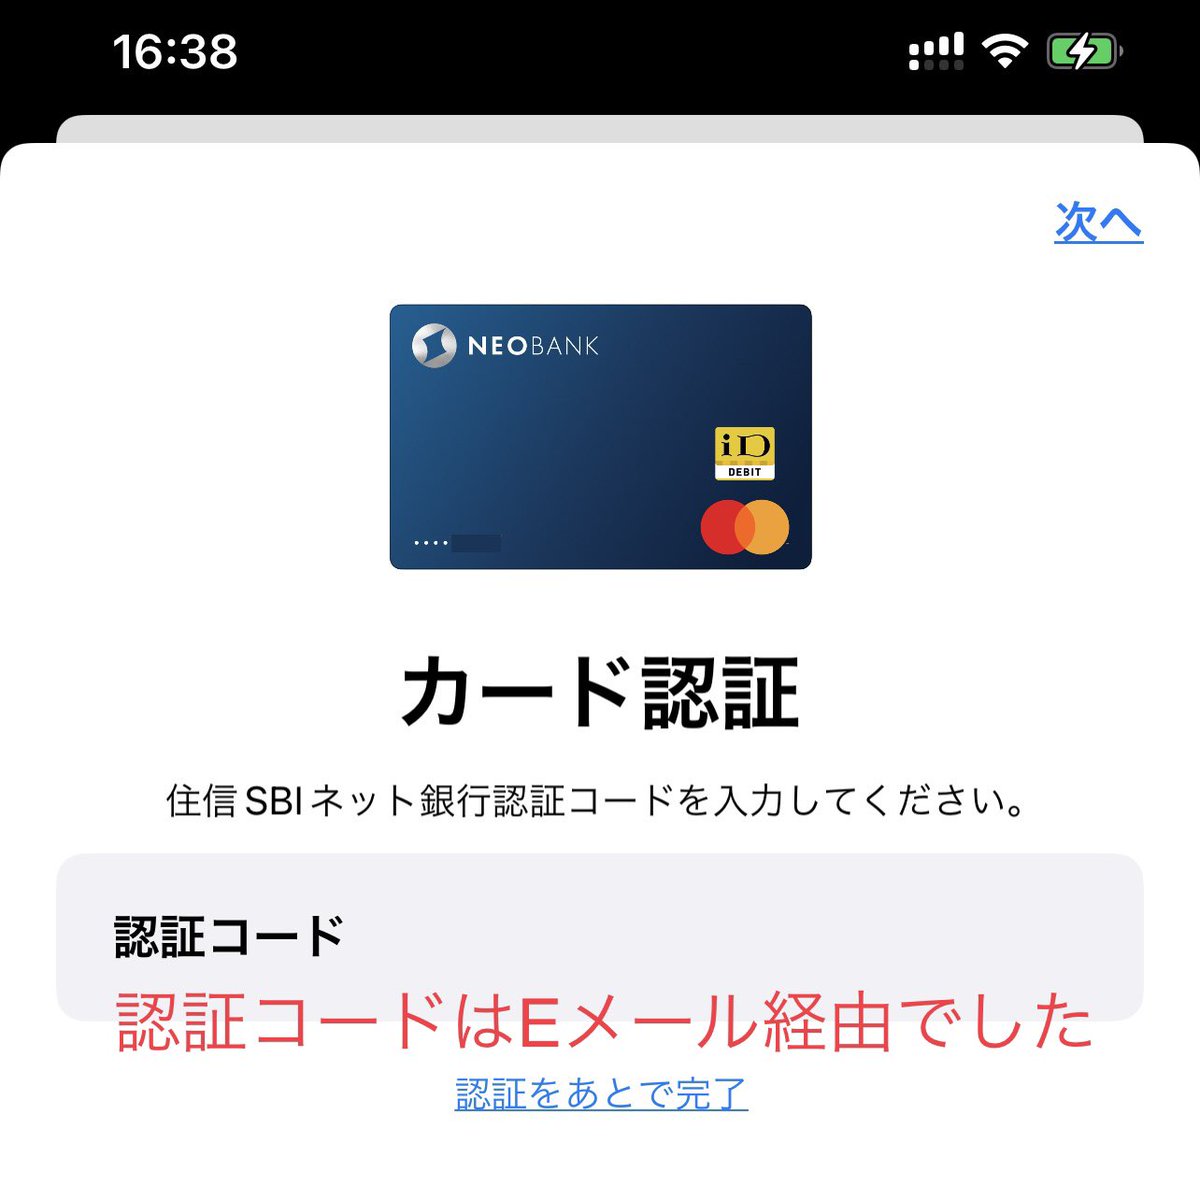 @Mutoh_Z ミライノデビット(住信SBIネット銀行のデビカ)が Apple Pay に登録できる様になり、✅nanacoやWAONへのチャージも可能になった感じです✌️#終活(#ポイント終活 #電子マネー終活)中なので、チャージは試していません🙇🏻‍♂️   